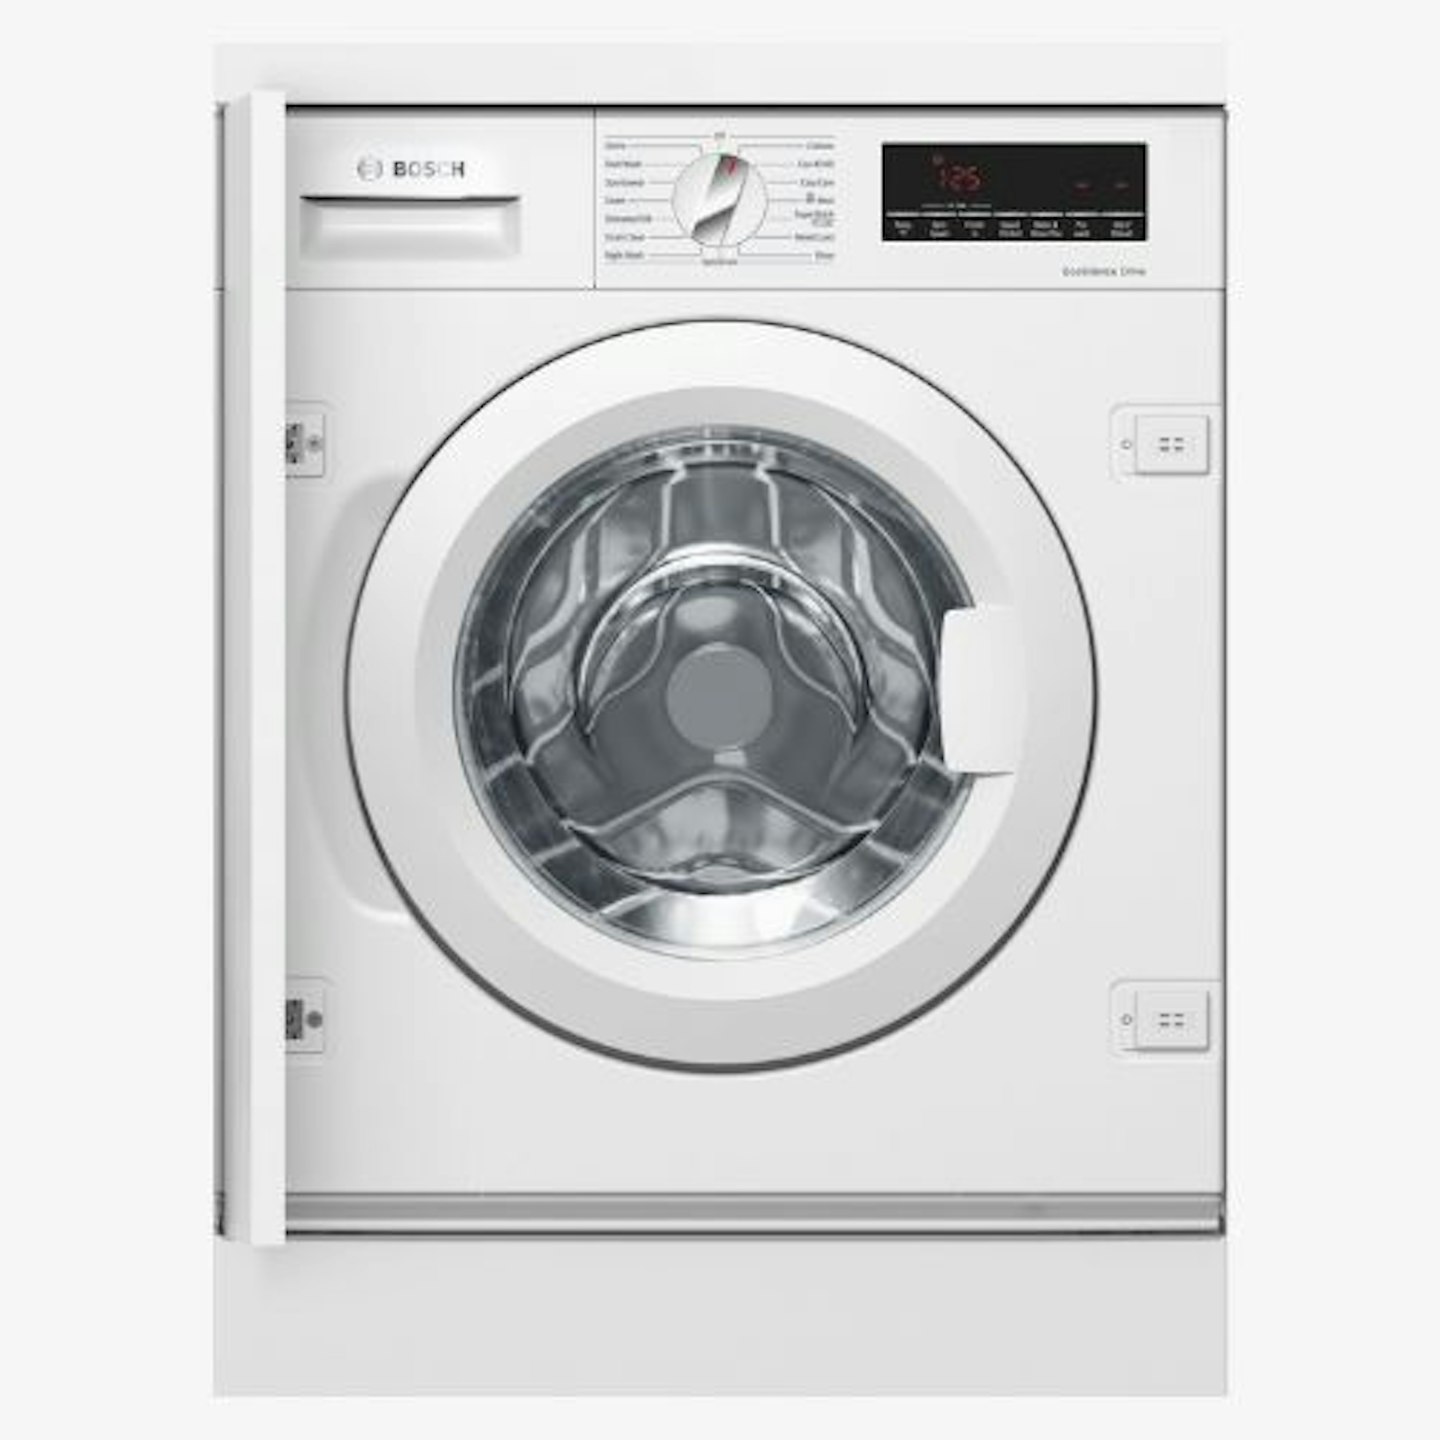 Bosch, S8 Integrated Washing Machine, 8kg - White